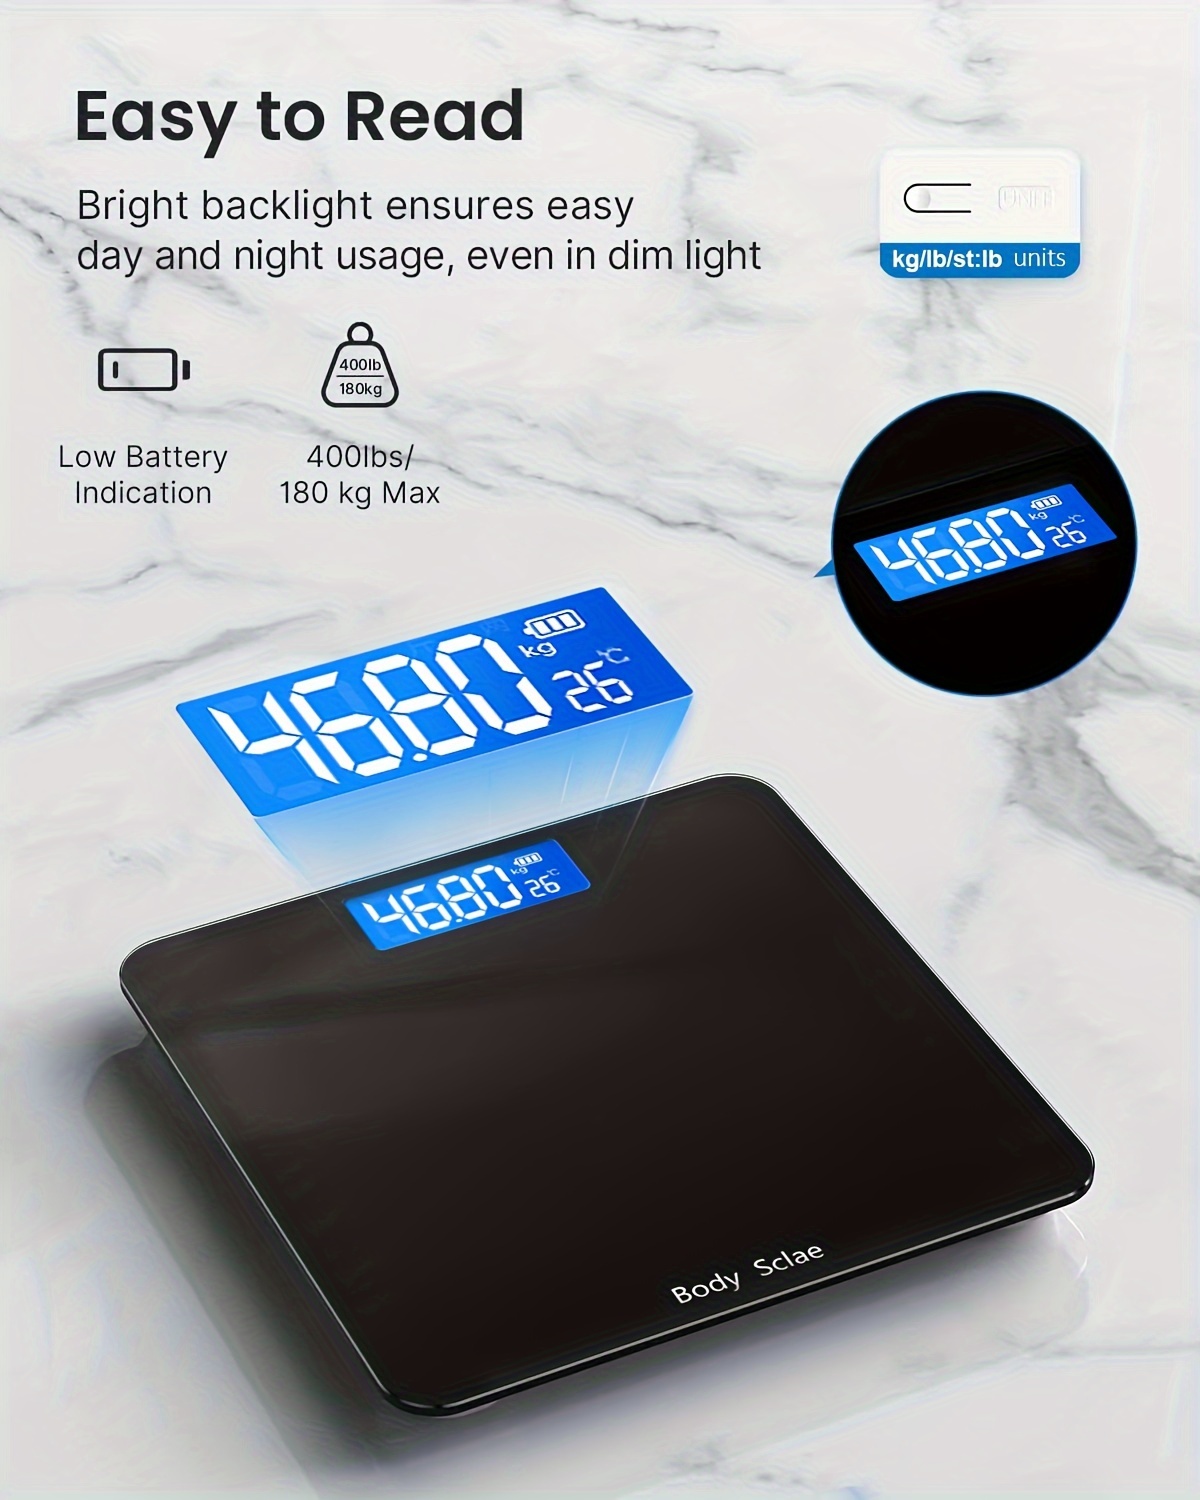  Báscula digital de baño para peso corporal precisa